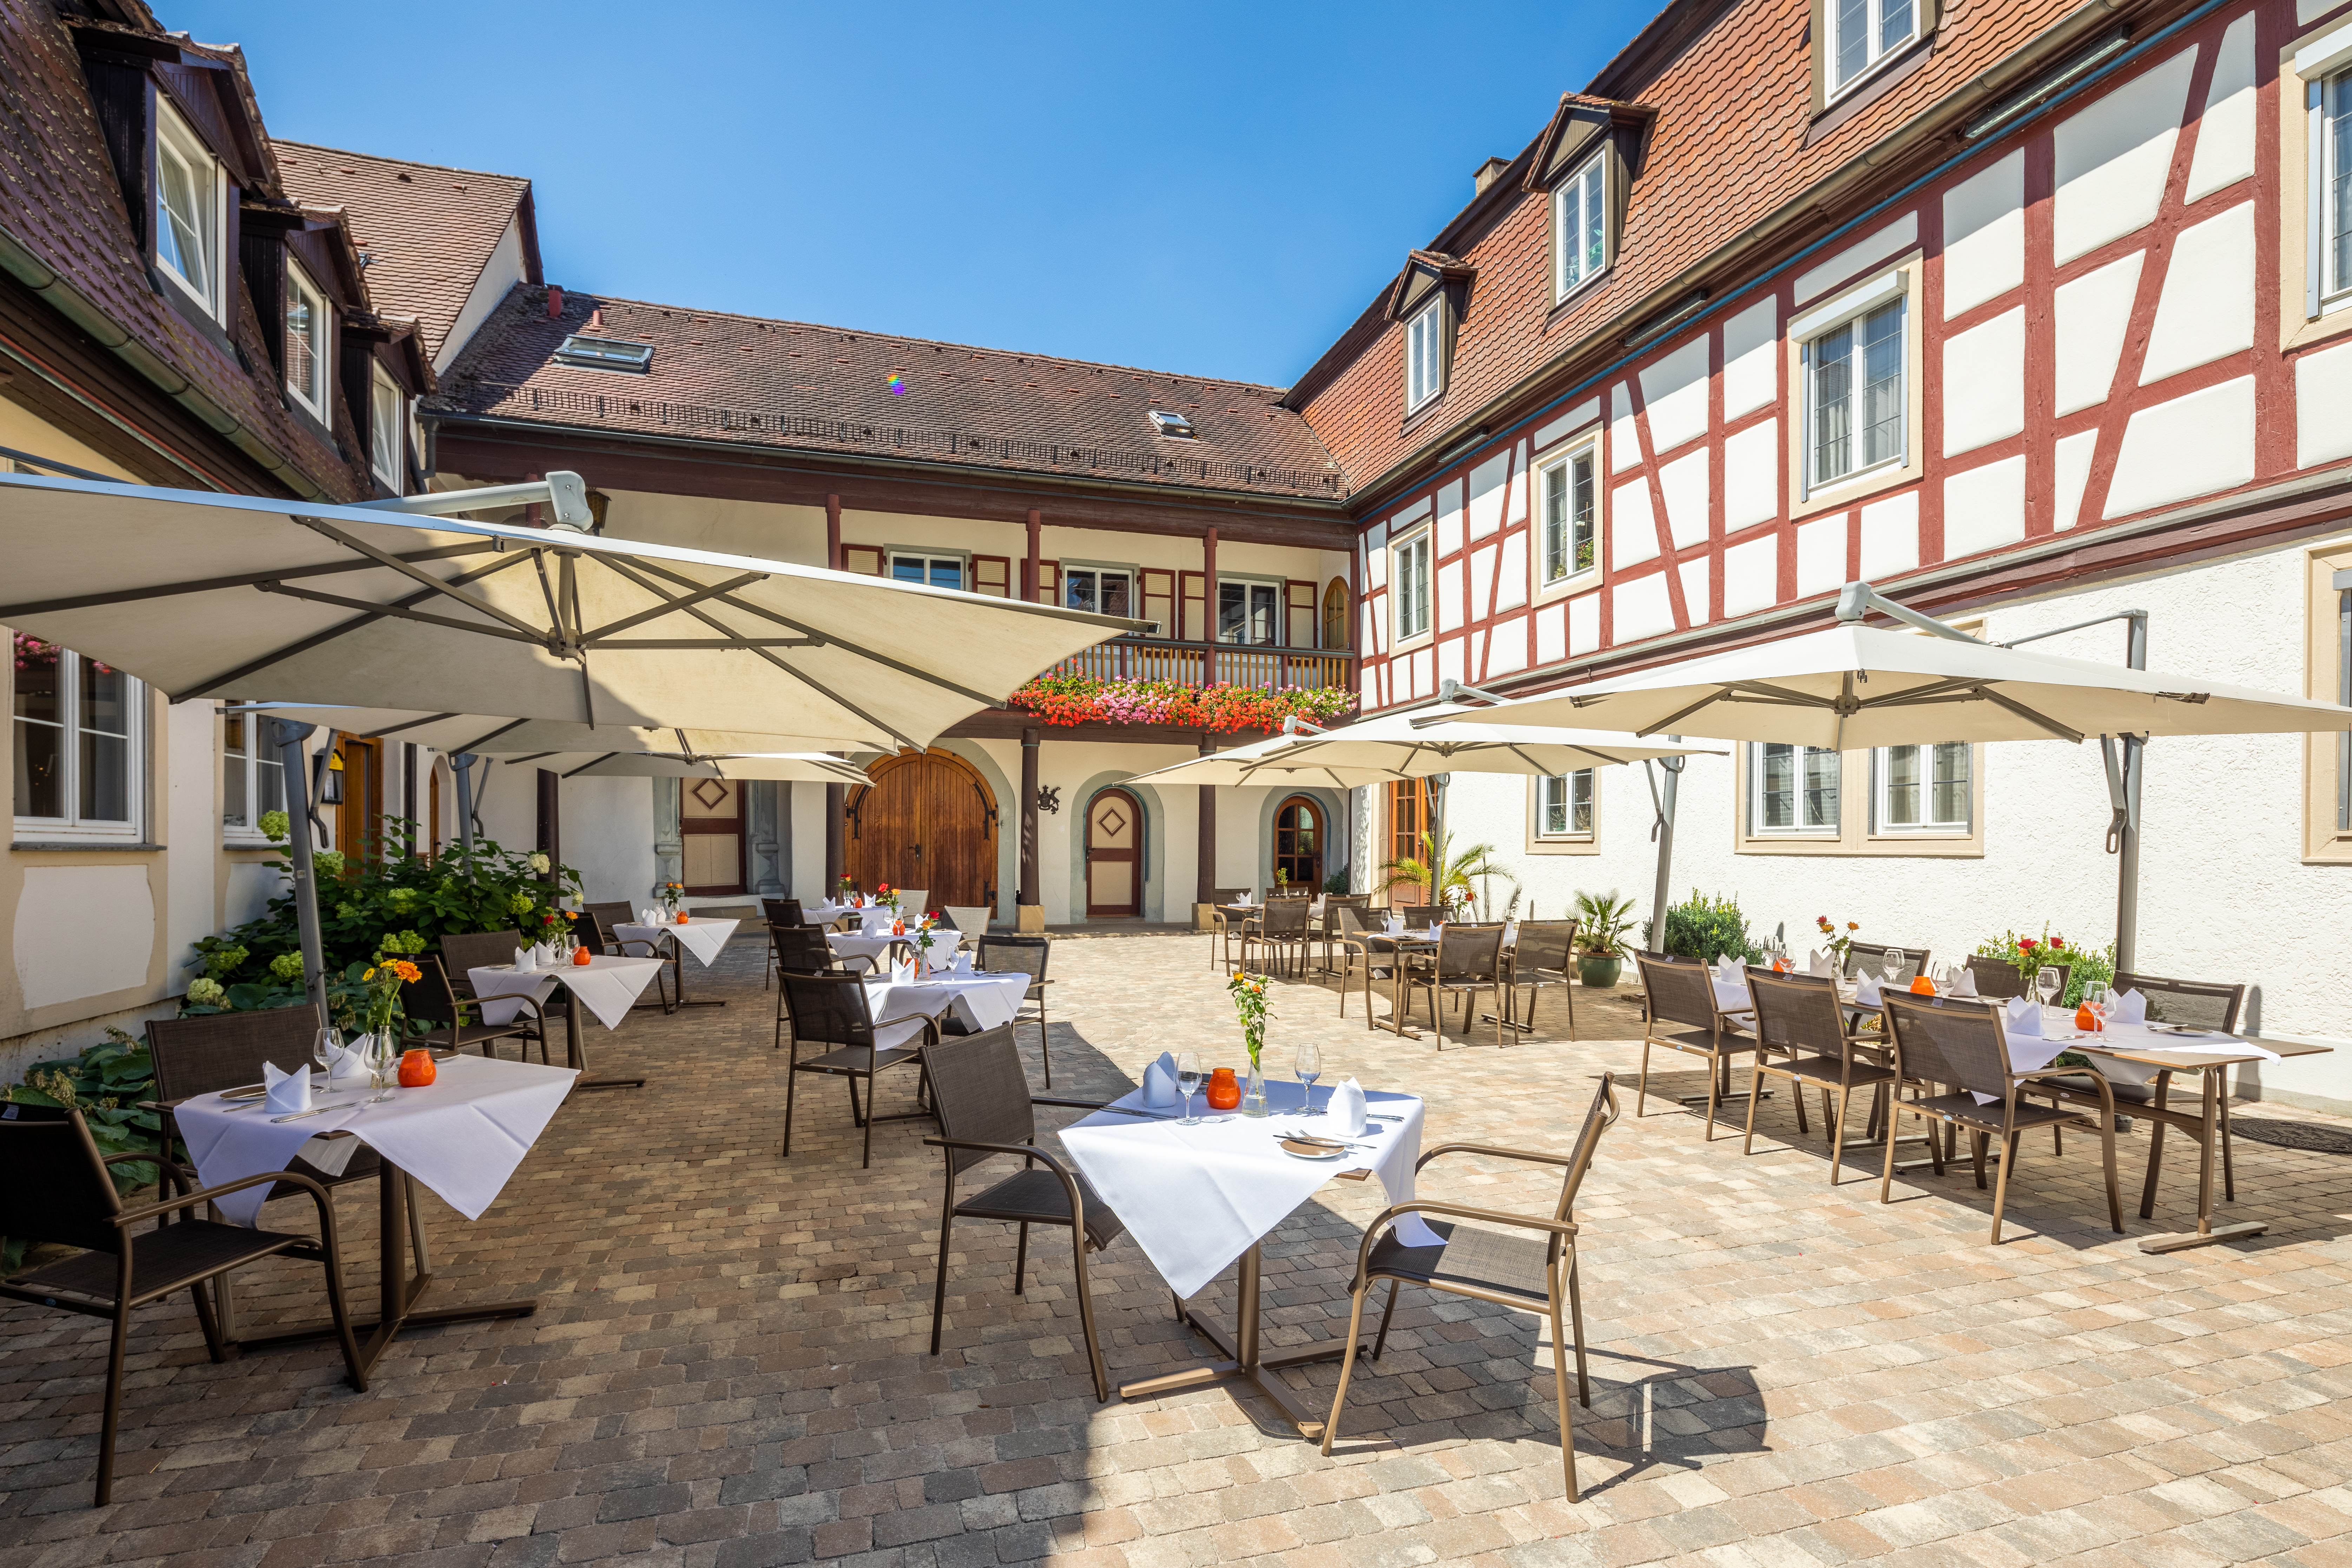 5 Übernachtungen inkl. SPA-Behandlungspaket im Hotel Schloss Döttingen für 2 Personen